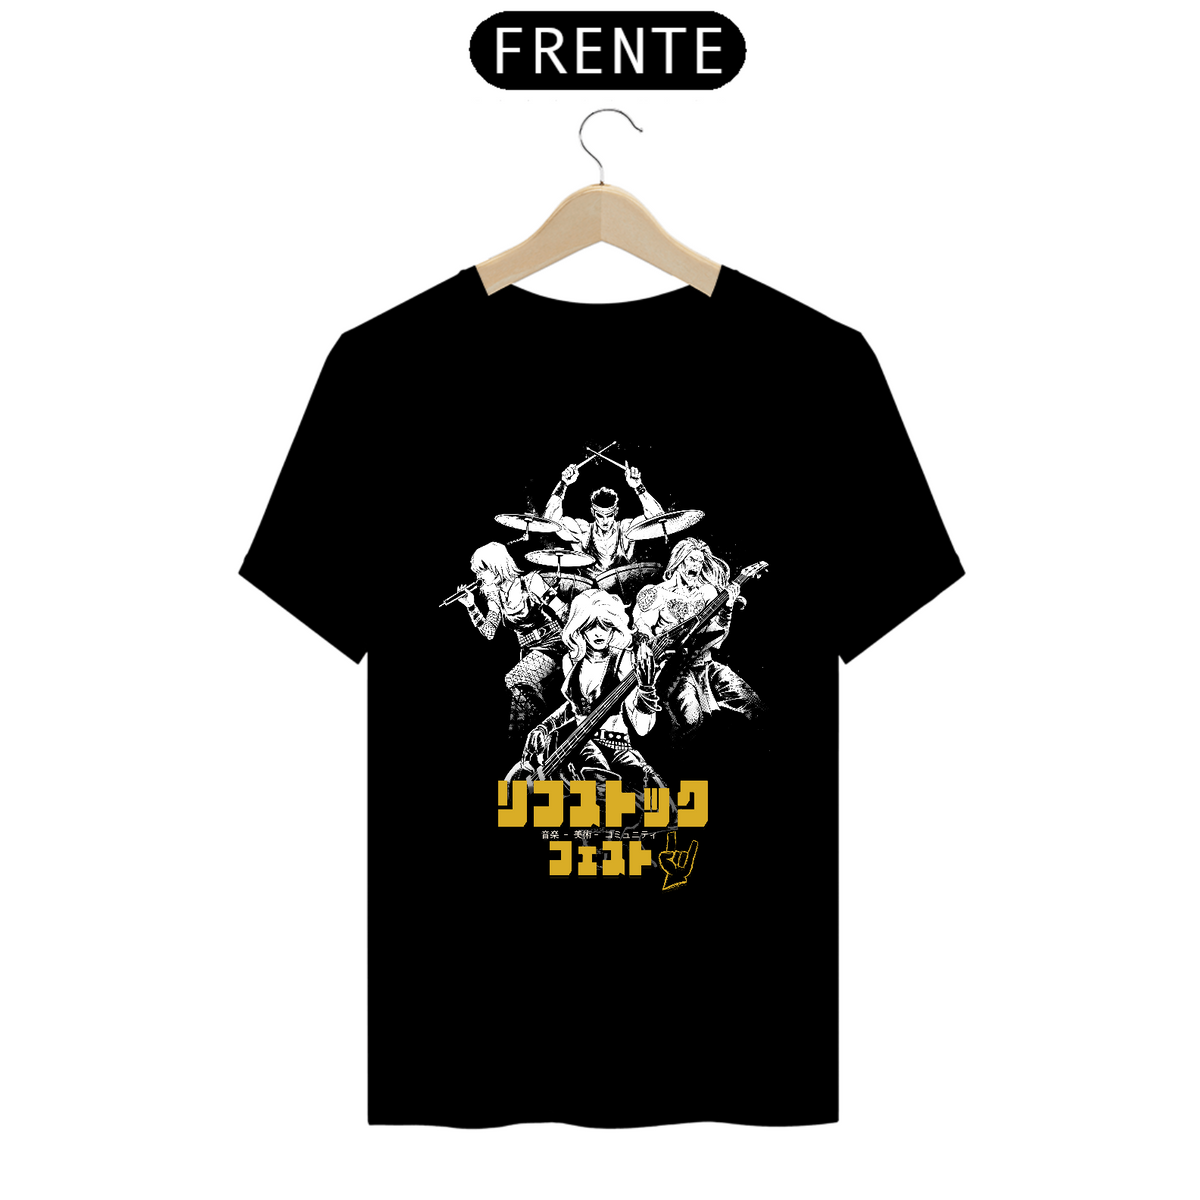 Nome do produto: Camiseta Prime - FEMZ - RiffStock Fest